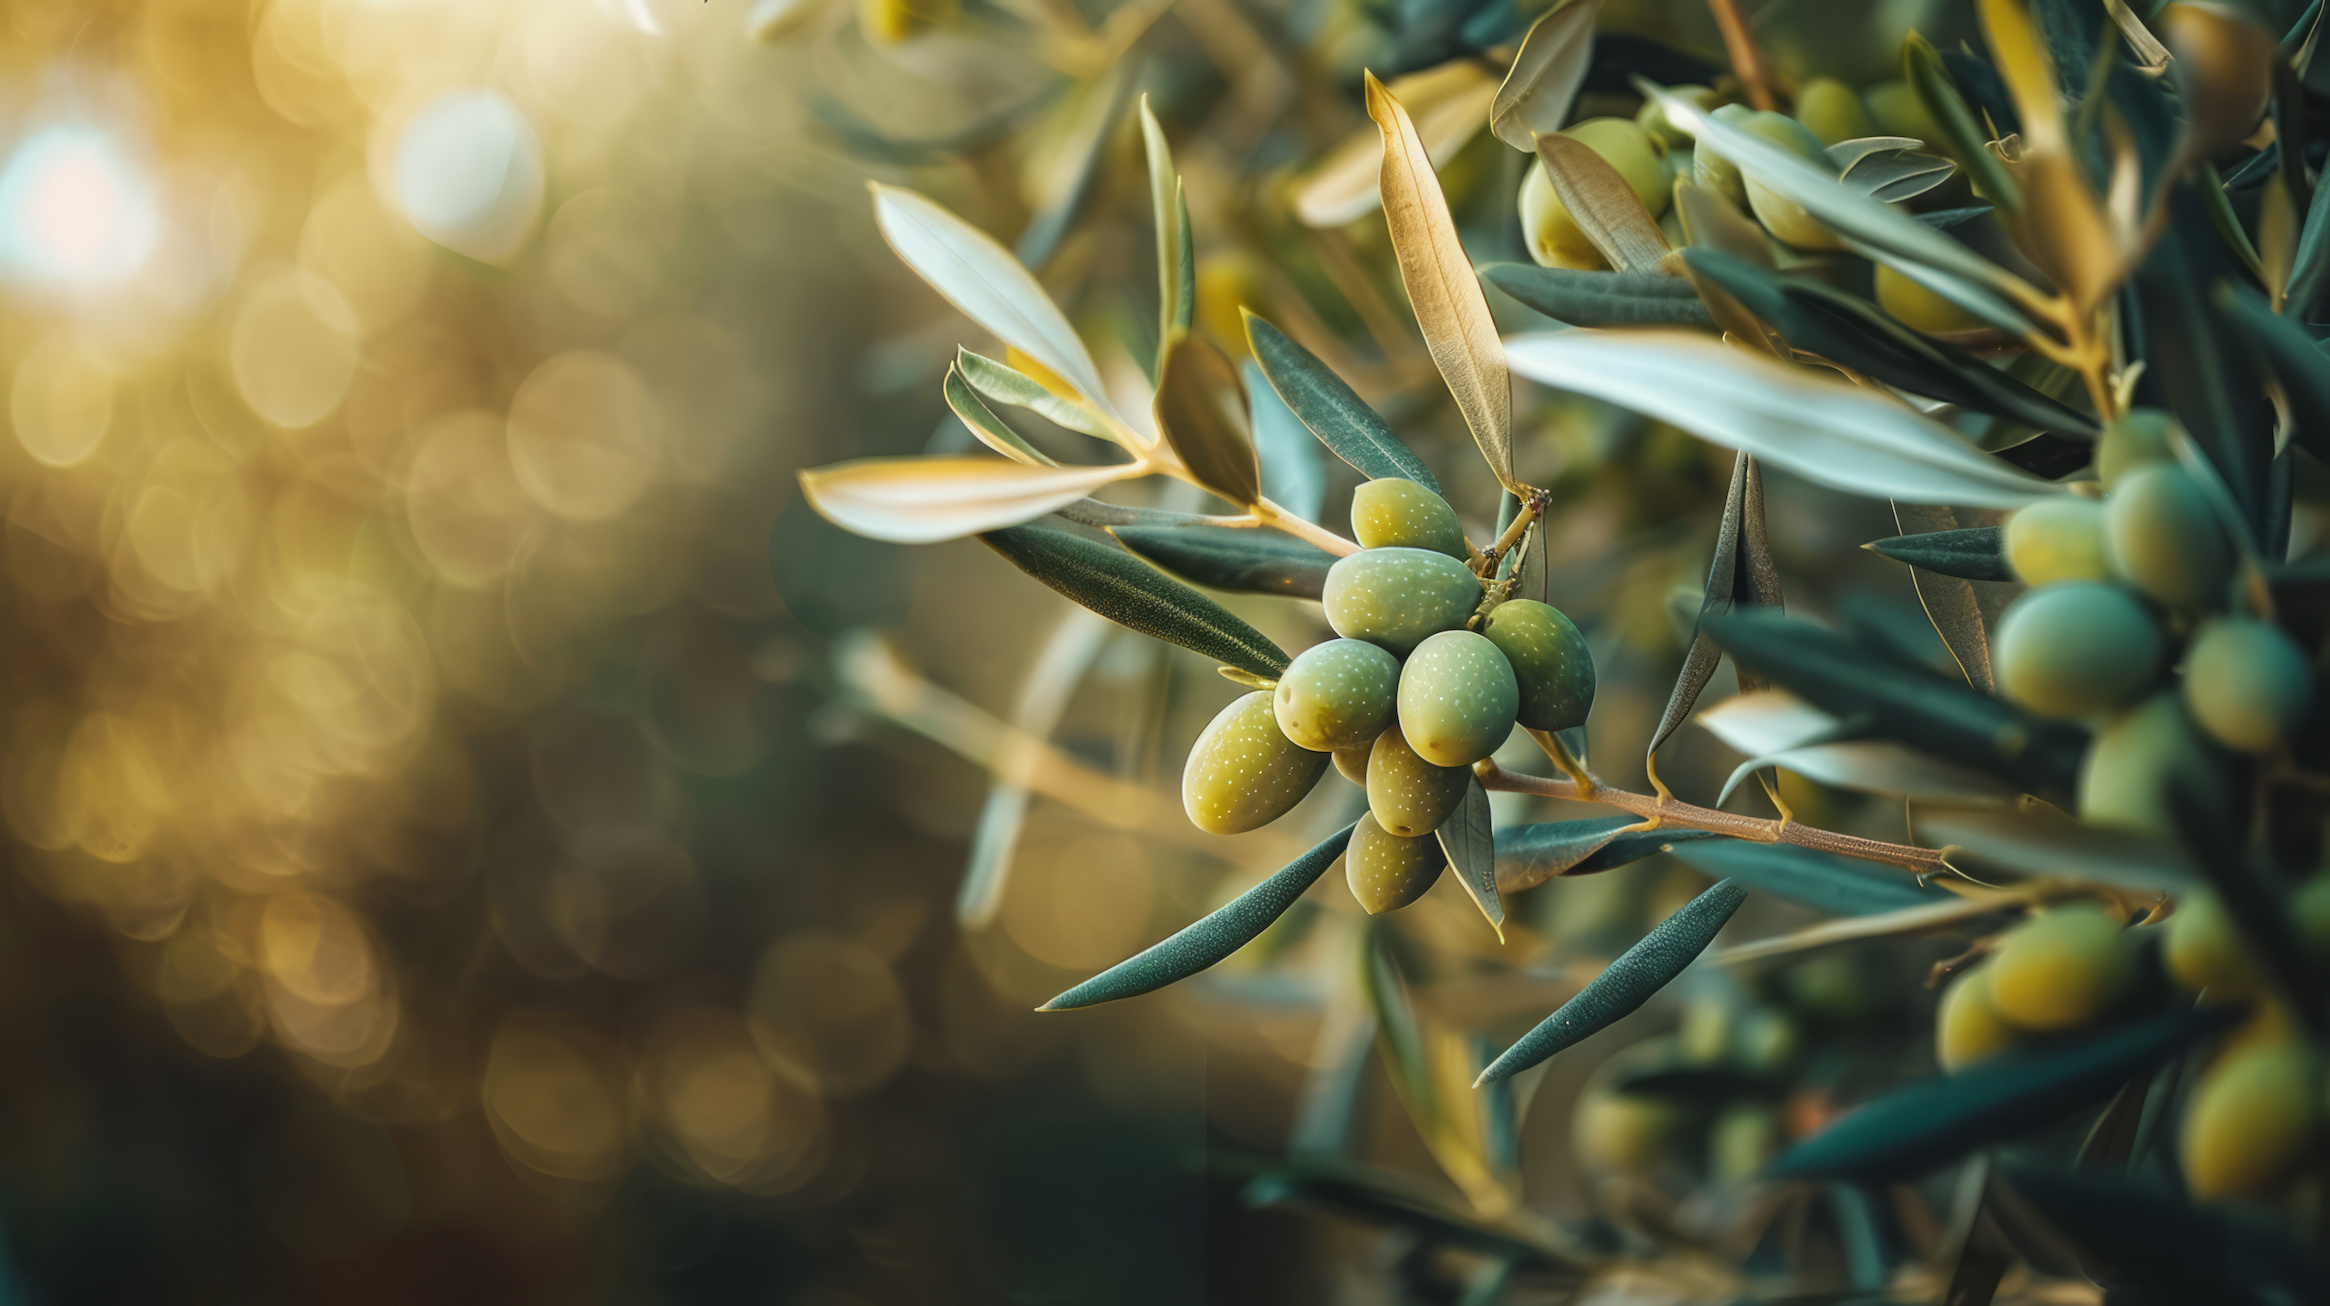 L'olivier, symbole de paix entre les nations depuis... la nuit des temps. © FM, Adobe Stock